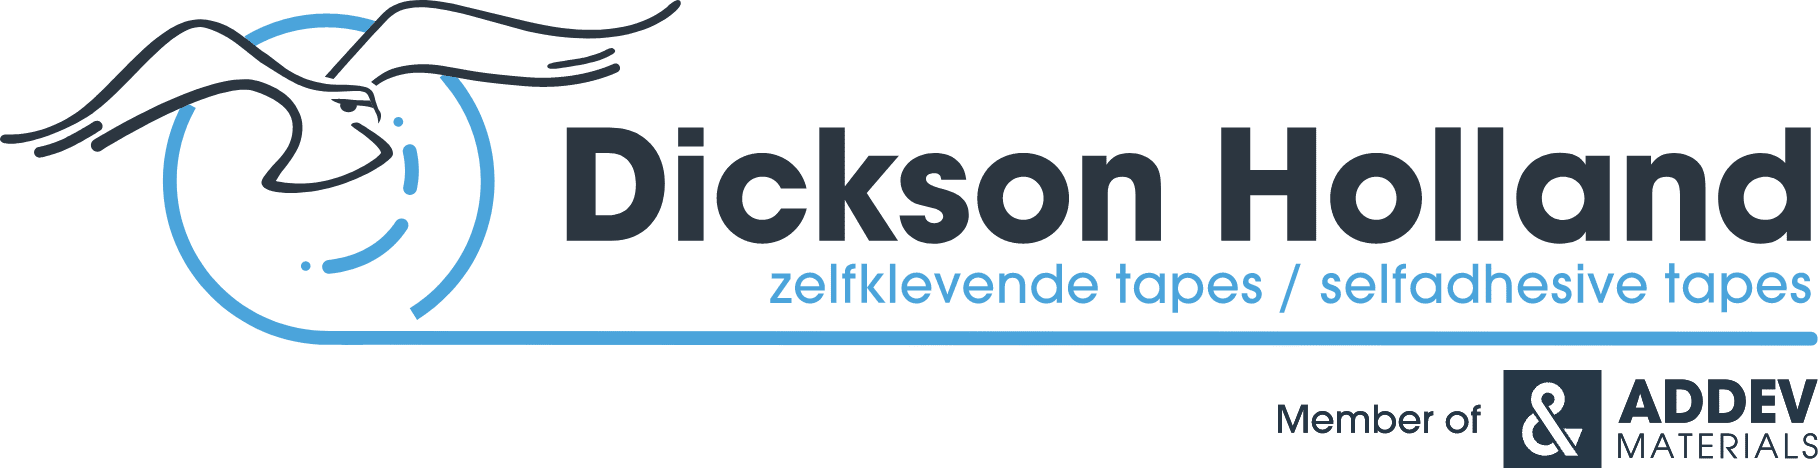 Dickson Holland logo